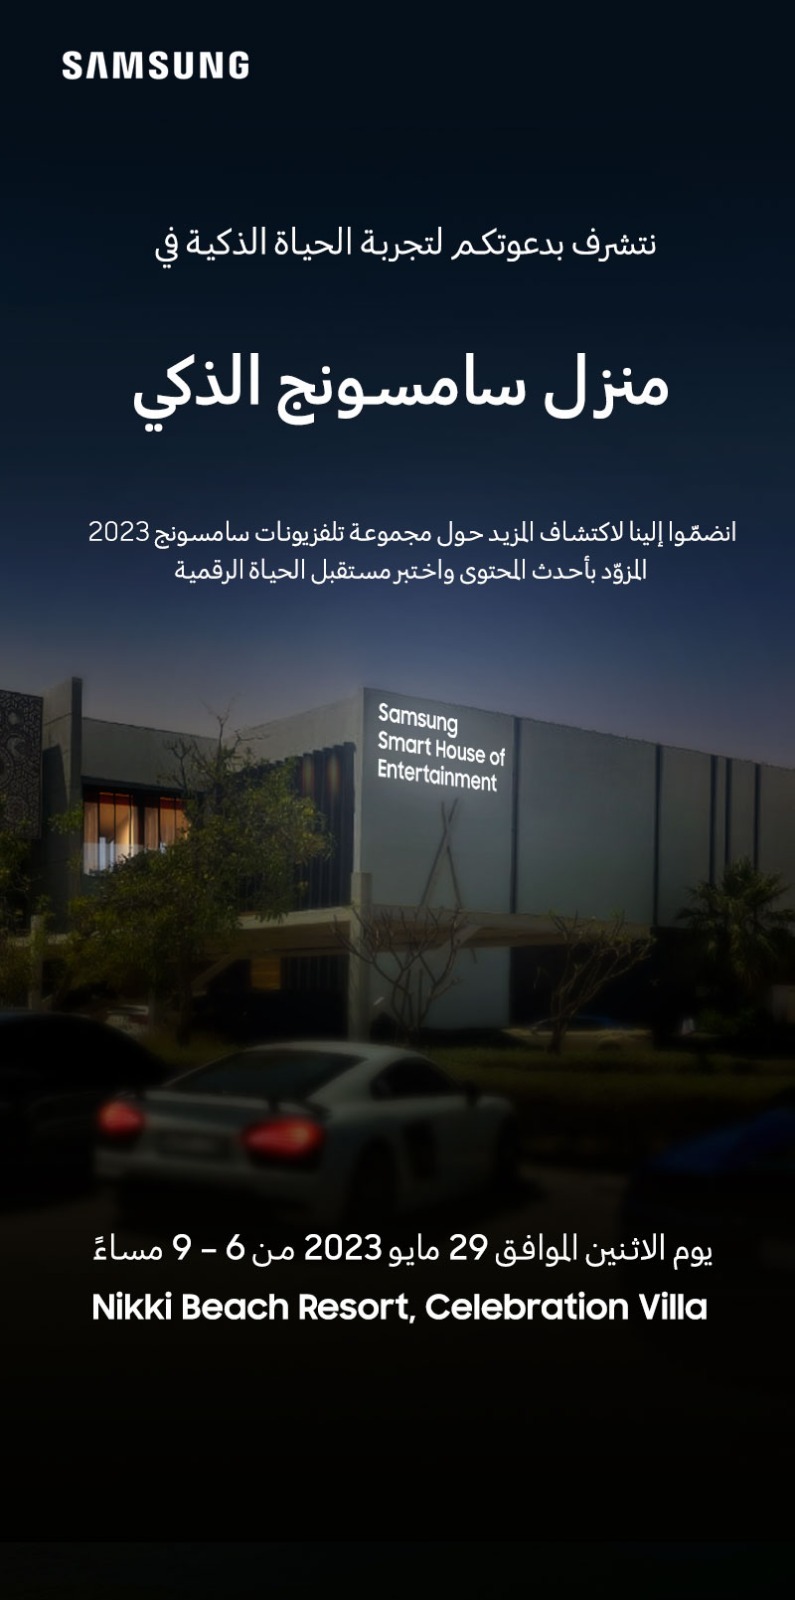 سامسونج إلكترونيكس المشرق العربي تستعد لتقديم تجربة ترفيهية متكاملة في نموذج بيت سامسونج الذكي الذي تقيمه في دبي  